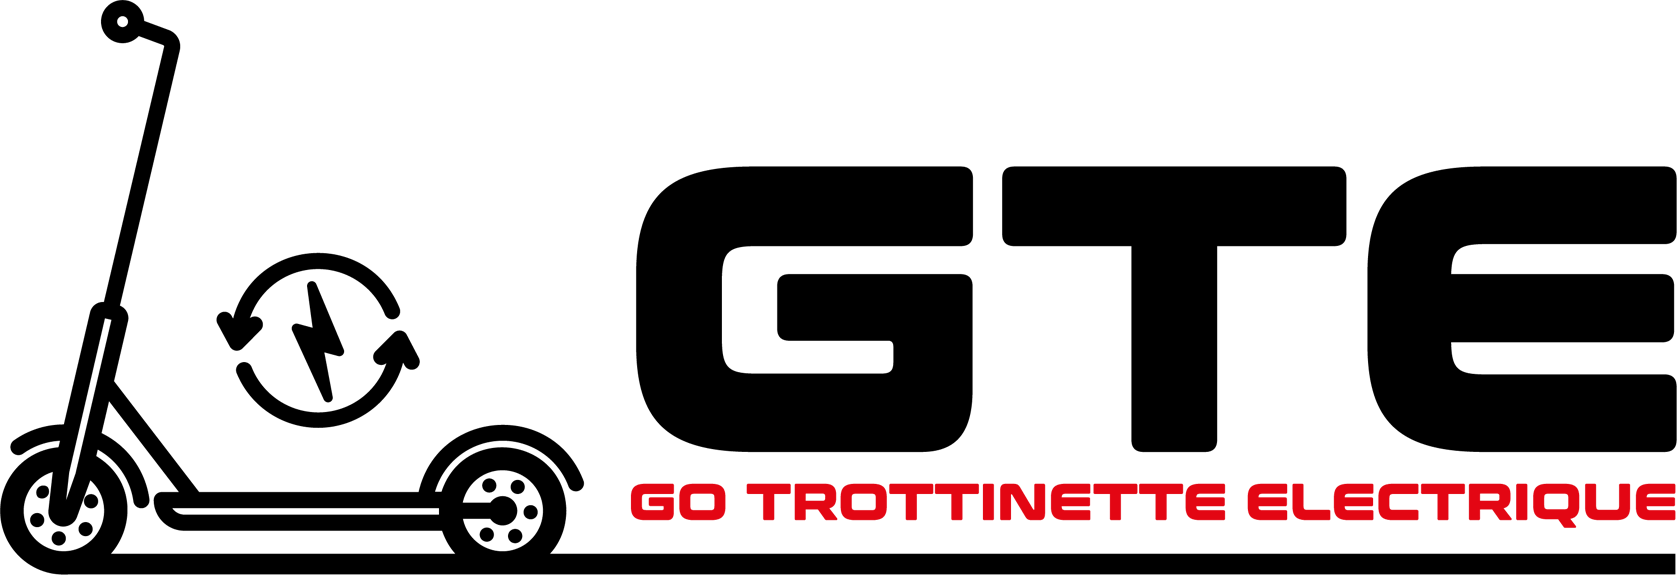 Go Trottinette Electrique